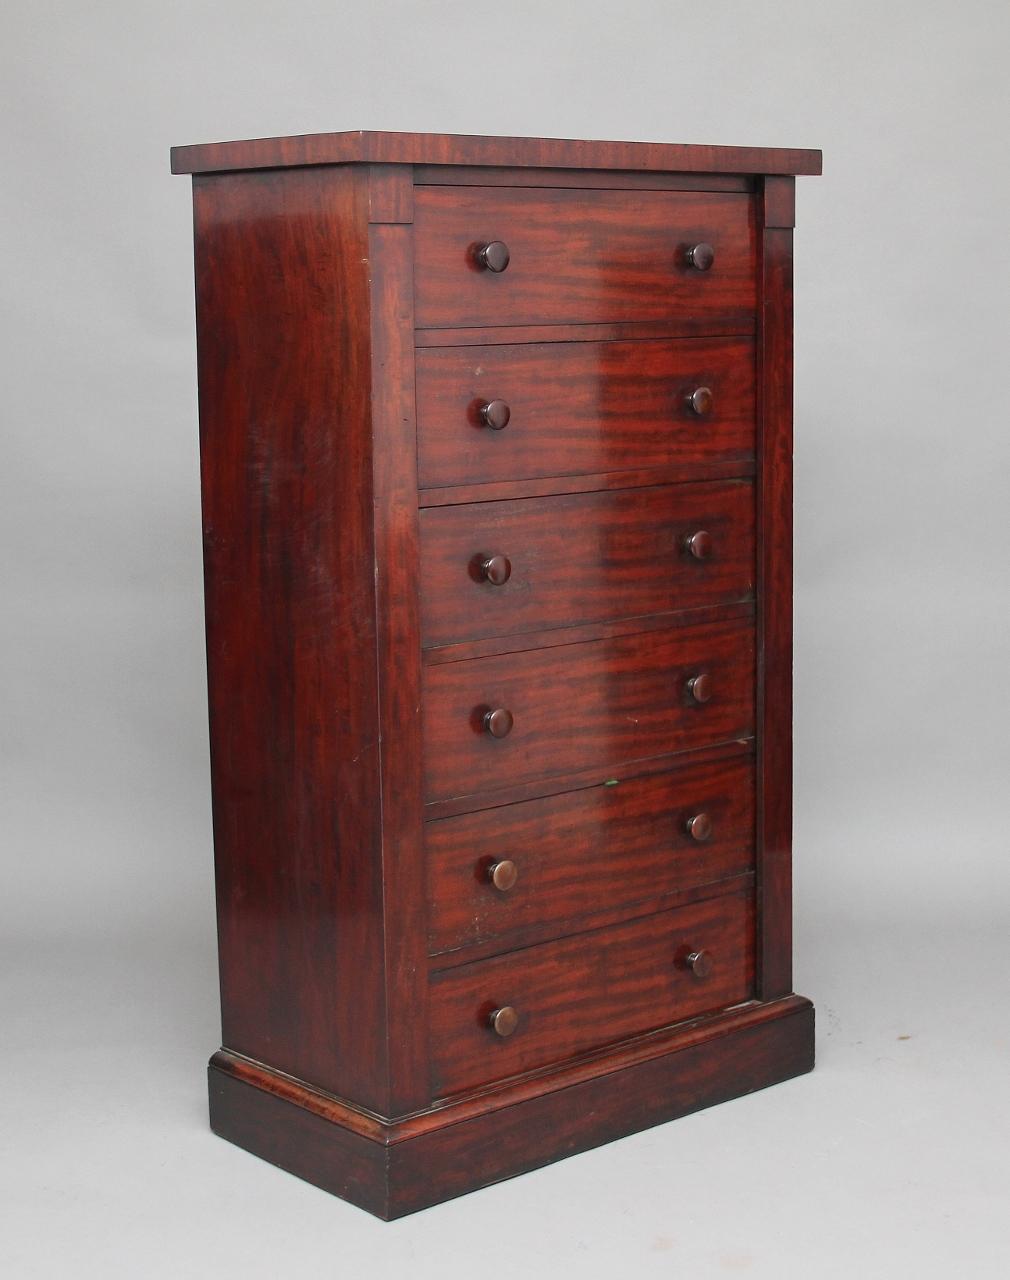 coffre Wellington en acajou du 19e siècle attribué à Gillows, d'une belle couleur acajou riche avec six tiroirs doublés d'acajou avec des boutons en bois d'origine, la façade du tiroir supérieur s'abaisse pour révéler des cloisons, les autres